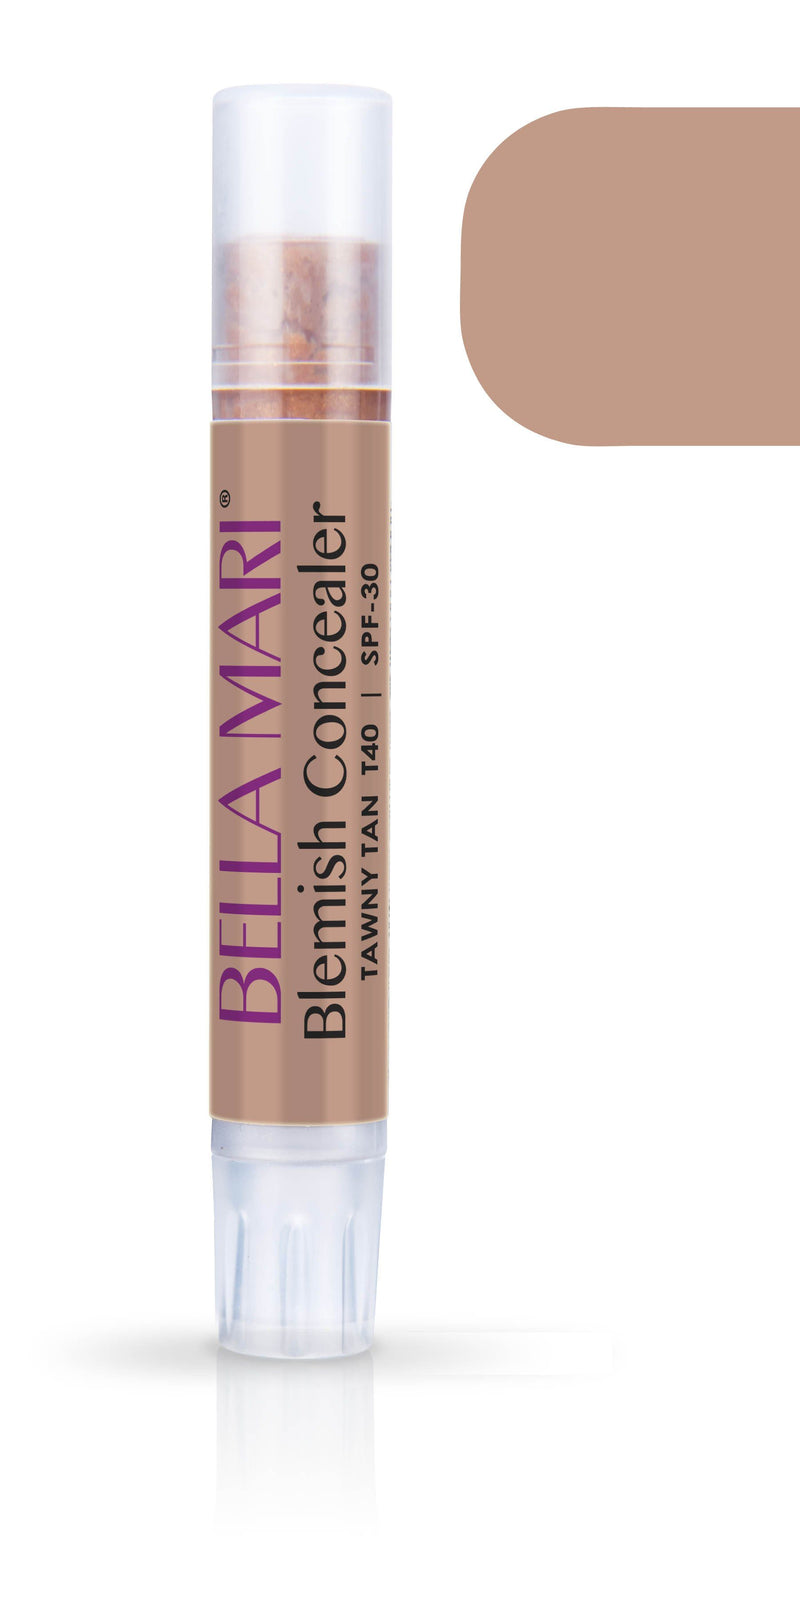 Bella Mari Natural Blemish Concealer Stick; 0.1floz - Bella Mari Natural Blemish Concealer Stick; 0.1floz - Tawny Tan